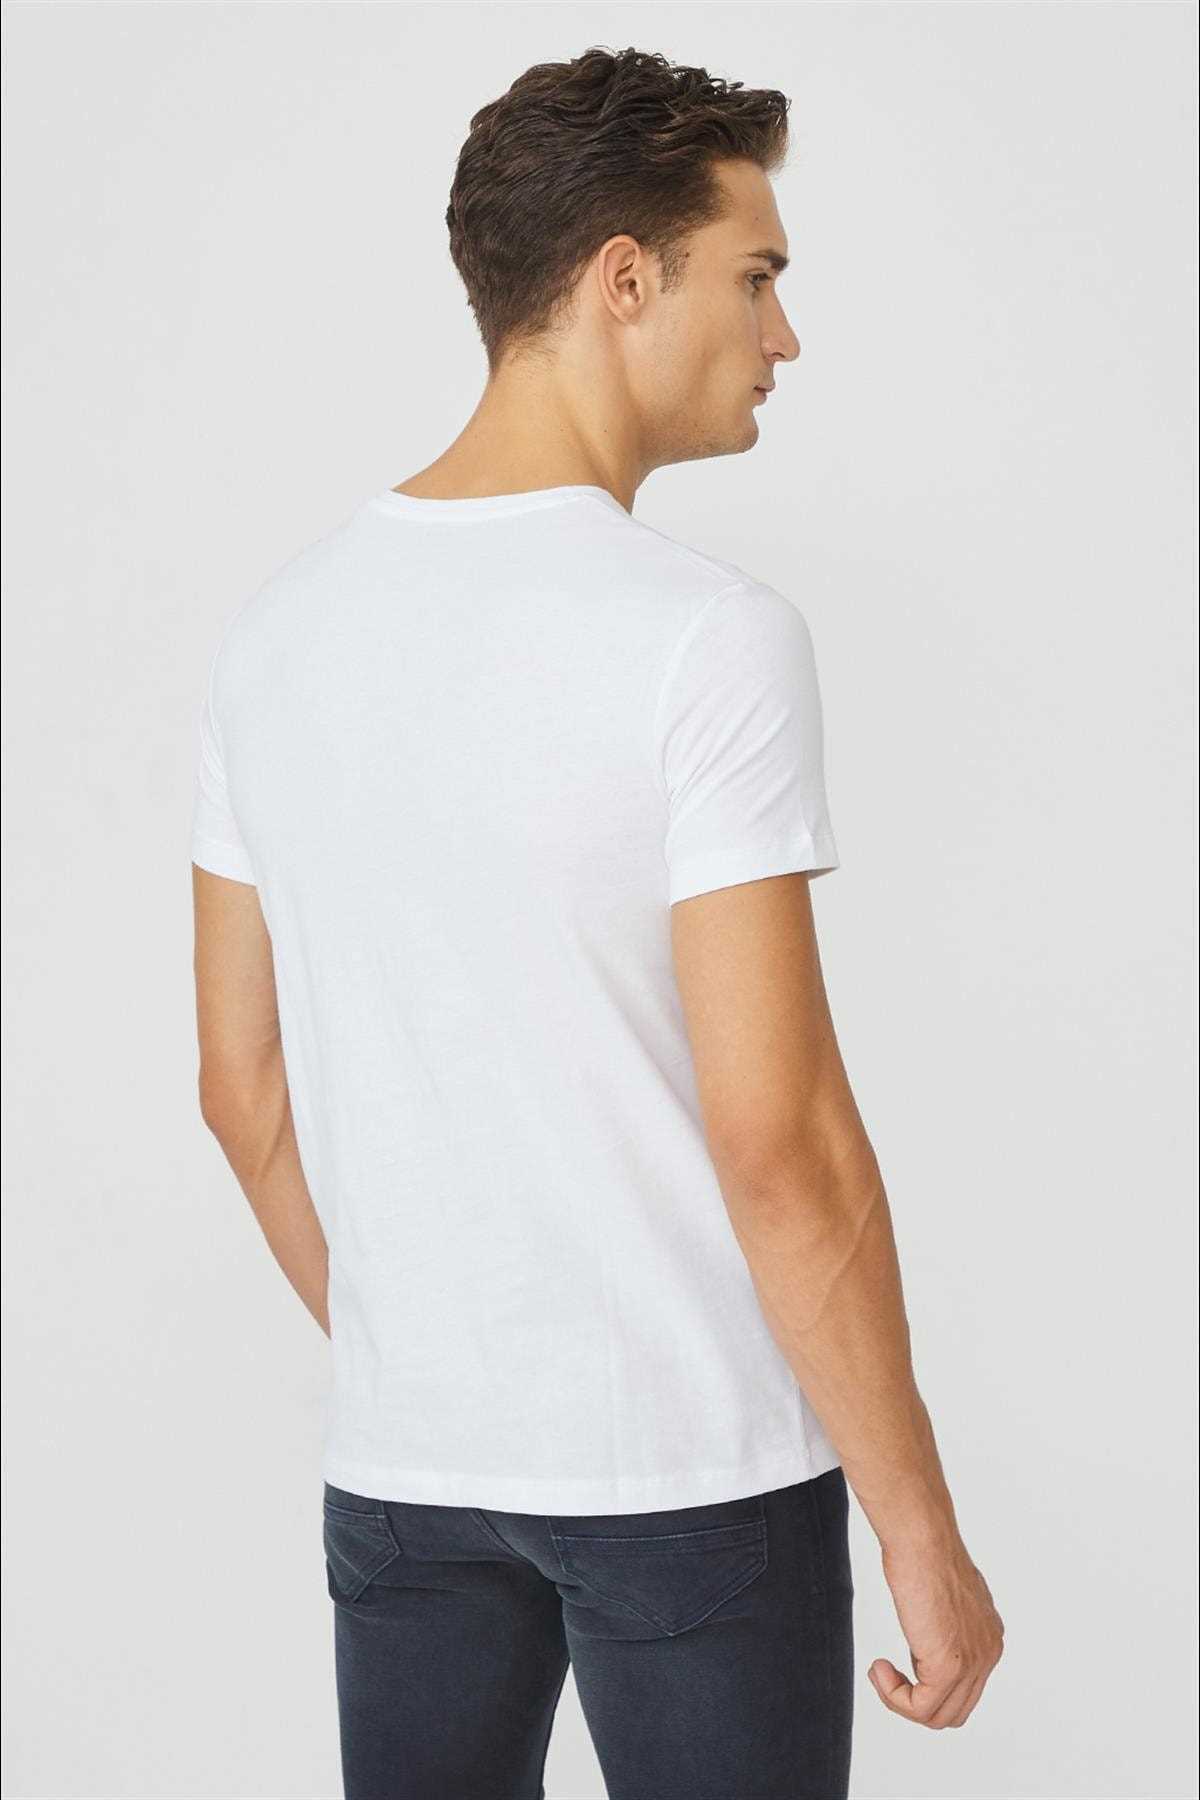 فروش اینترنتی تیشرت مردانه با قیمت شیک آوا کد ty54102394